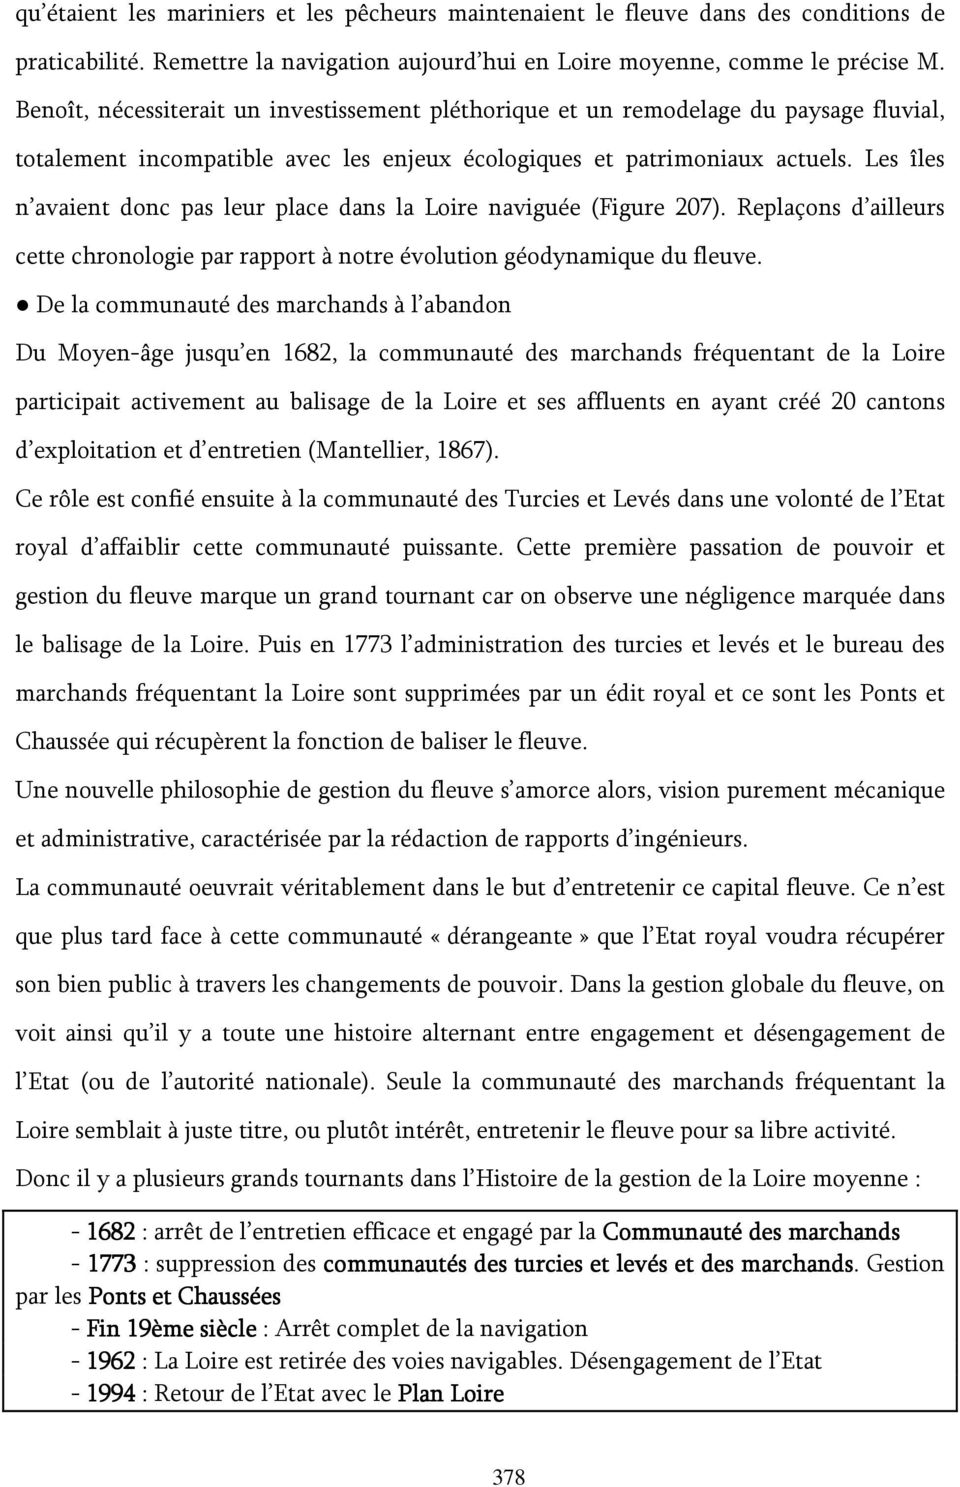 Les îles n avaient donc pas leur place dans la Loire naviguée (Figure 207). Replaçons d ailleurs cette chronologie par rapport à notre évolution géodynamique du fleuve.